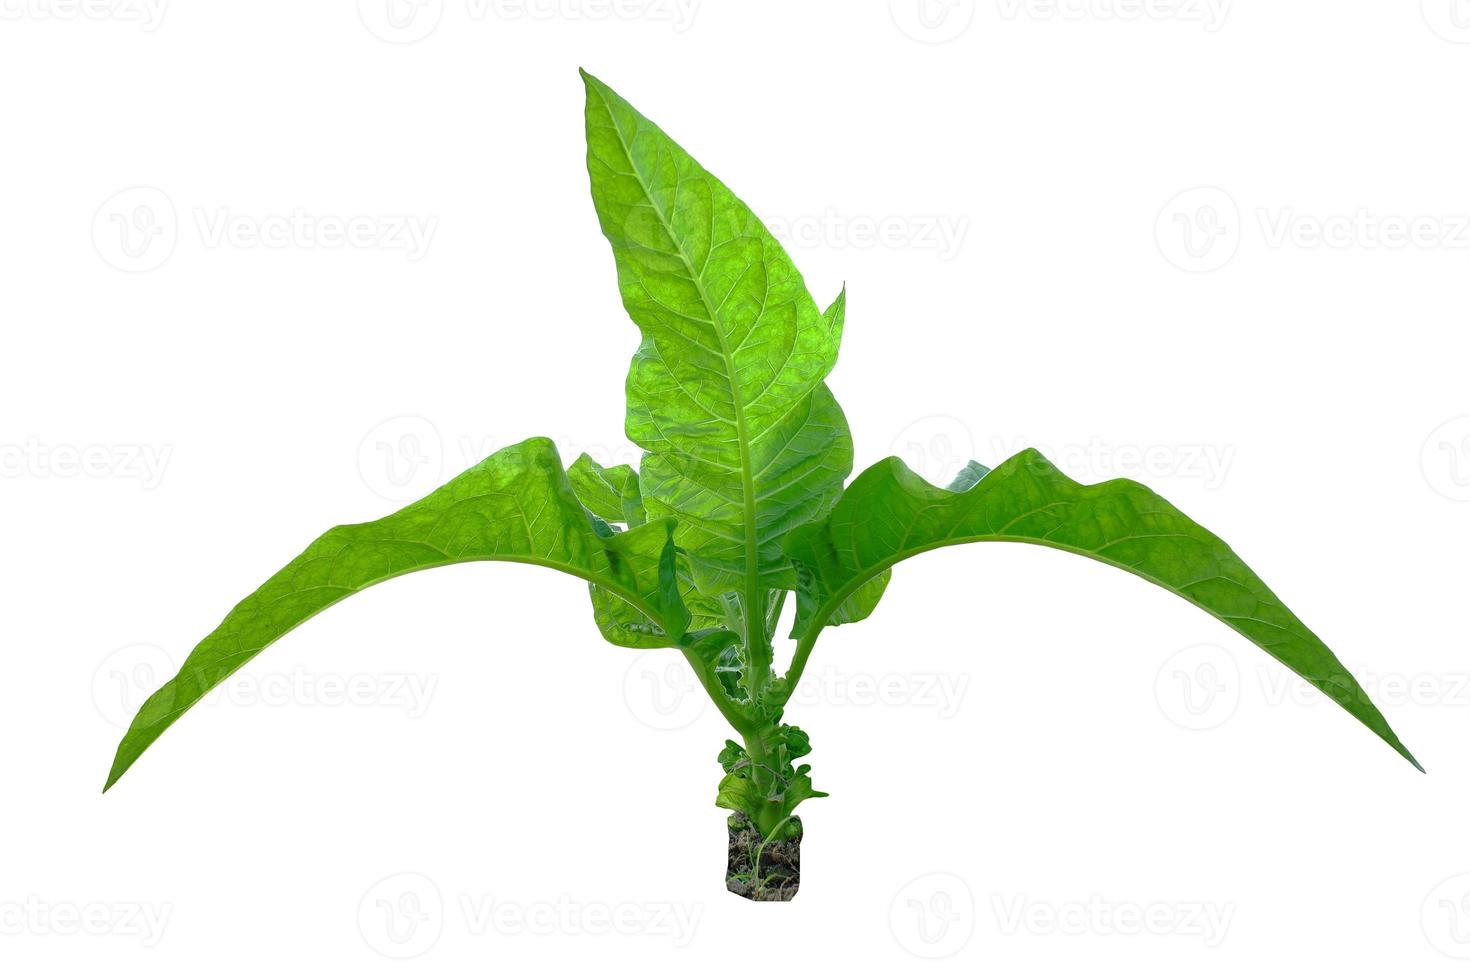 hojas de tabaco brasileño sobre fondo blanco. nicotiana rustica, o tabaco azteca, tabaco fuerte, es una planta de la selva tropical de la familia de las solanáceas. foto